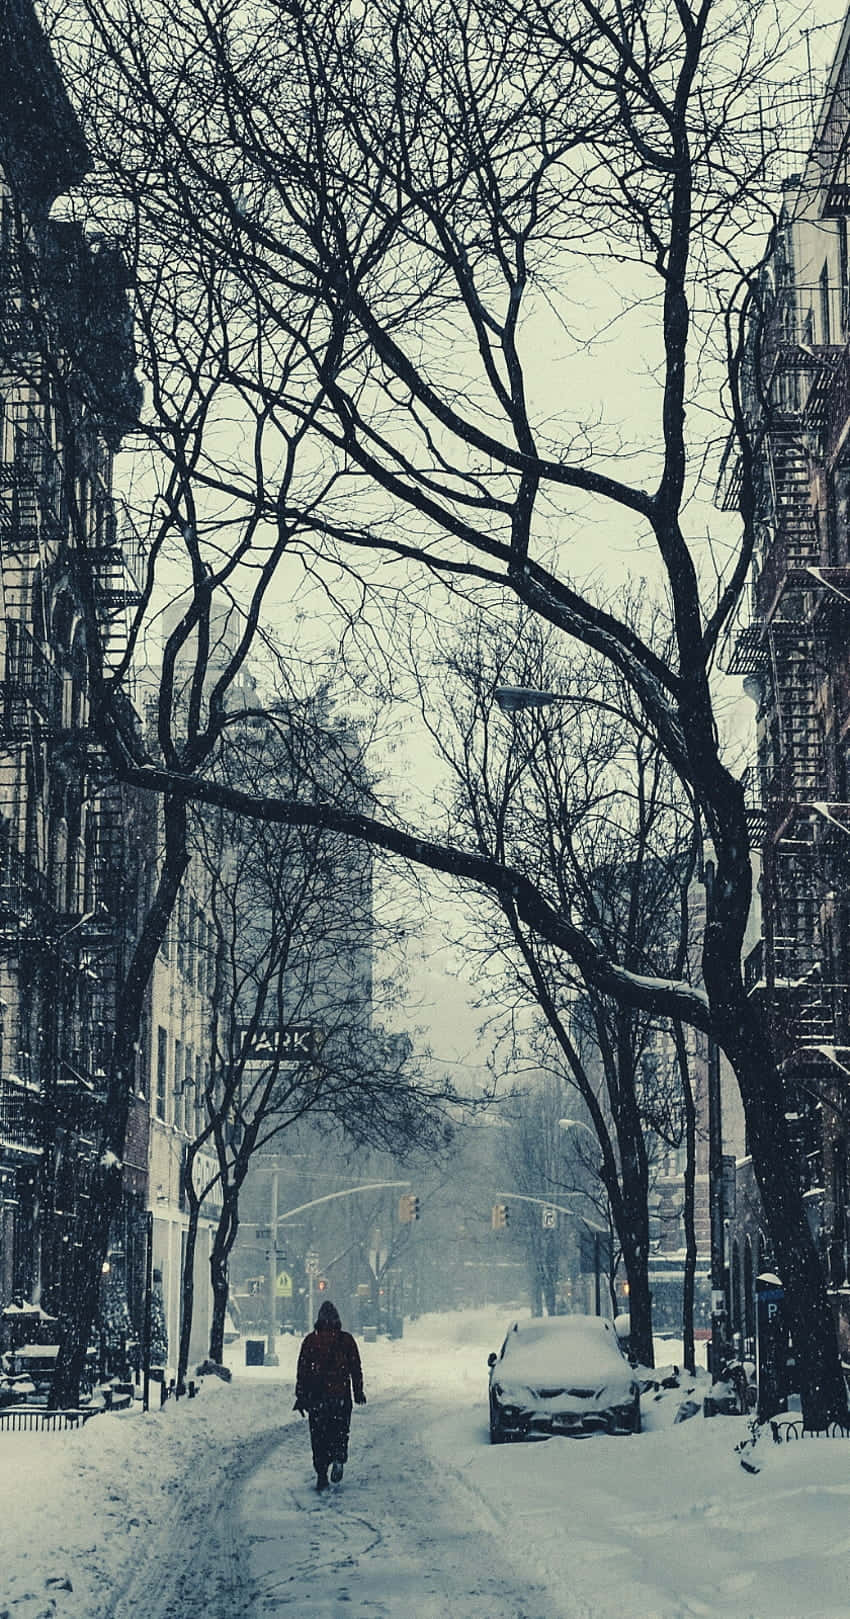 Snowy City Street Winter Scene Wallpaper